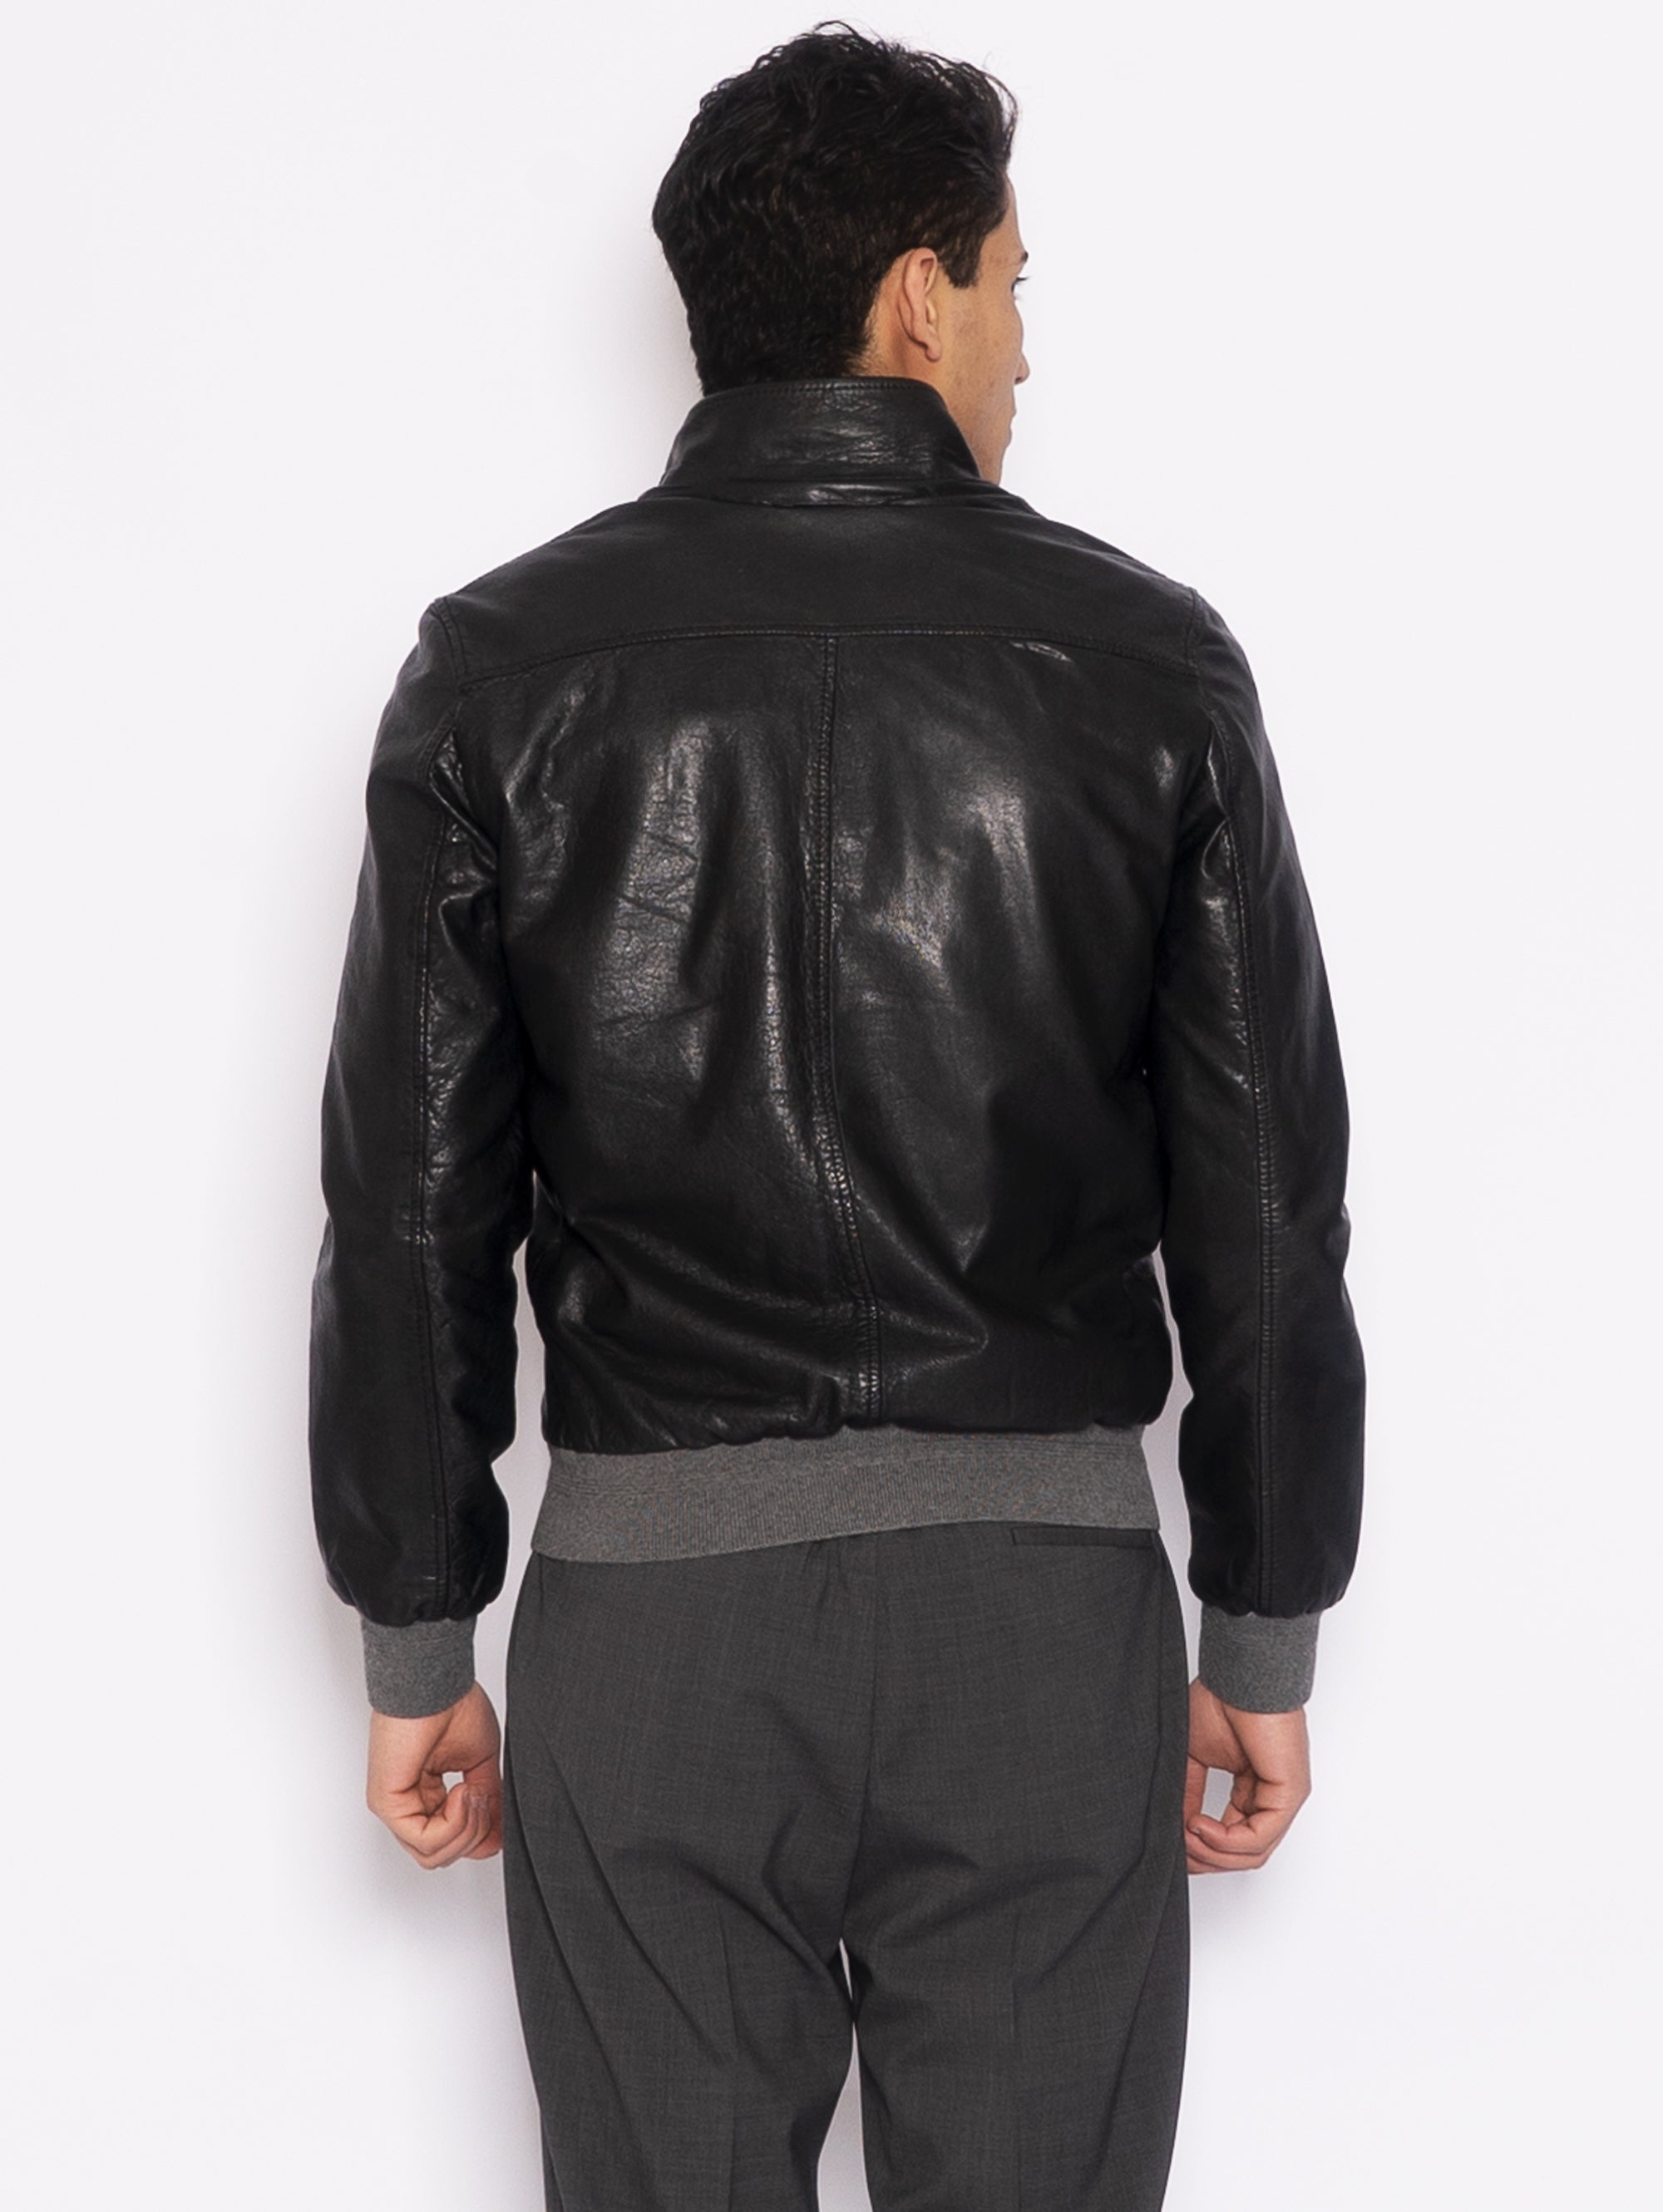 Harrington Jacket in Black Washed Leather